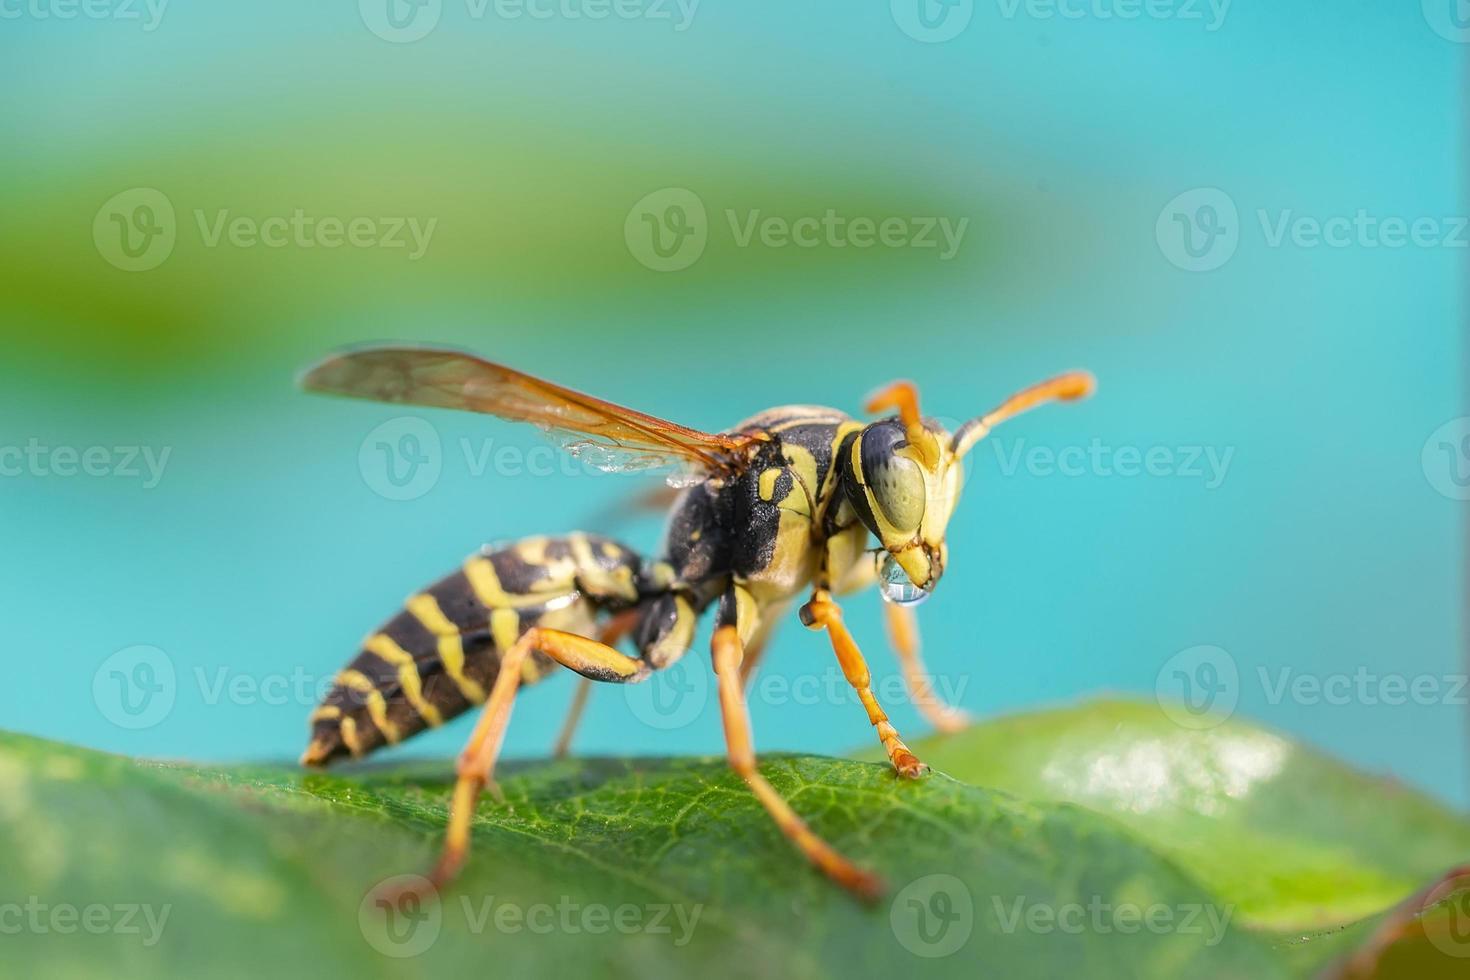 a vespa está sentada em folhas verdes. a perigosa vespa comum listrada amarela e preta senta-se nas folhas foto